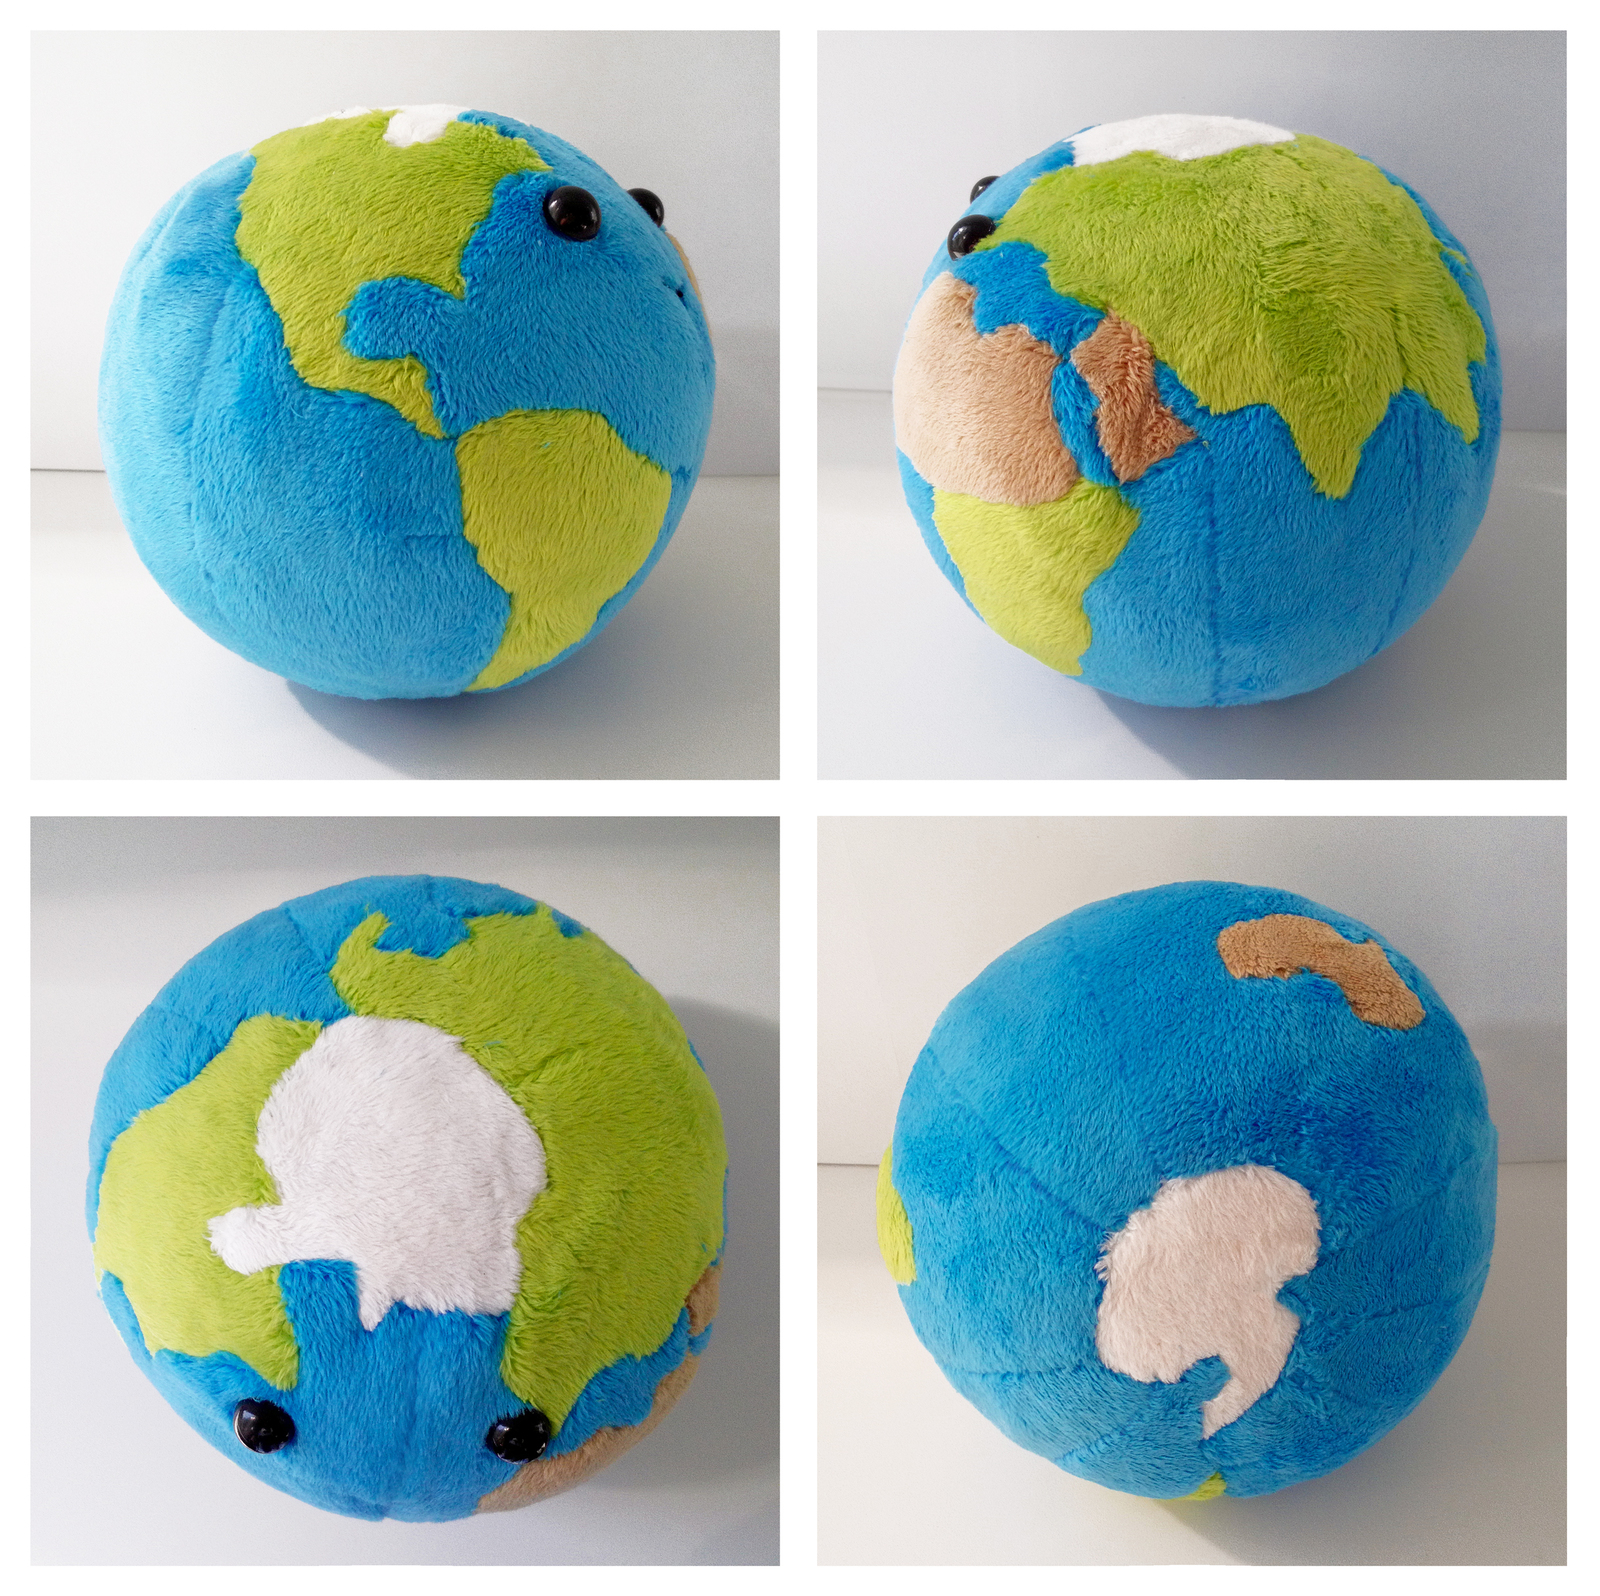 Как сделать земной шар